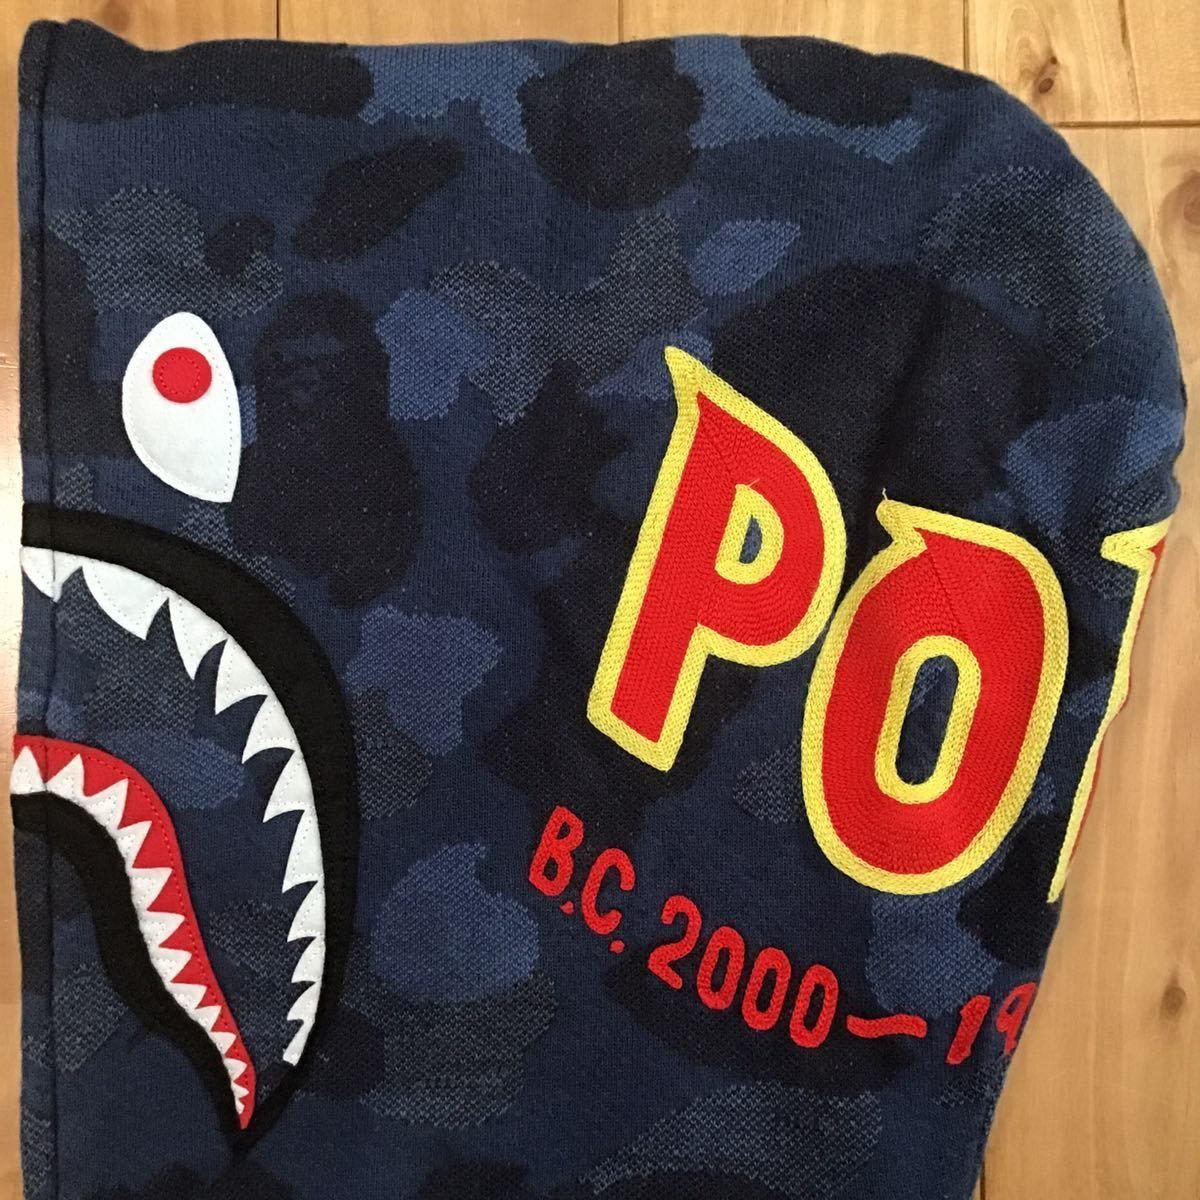 ジャガードカモ シャーク パーカー Sサイズ Jacquard shark full zip hoodie a bathing ape BAPE  blue camo エイプ ベイプ 迷彩